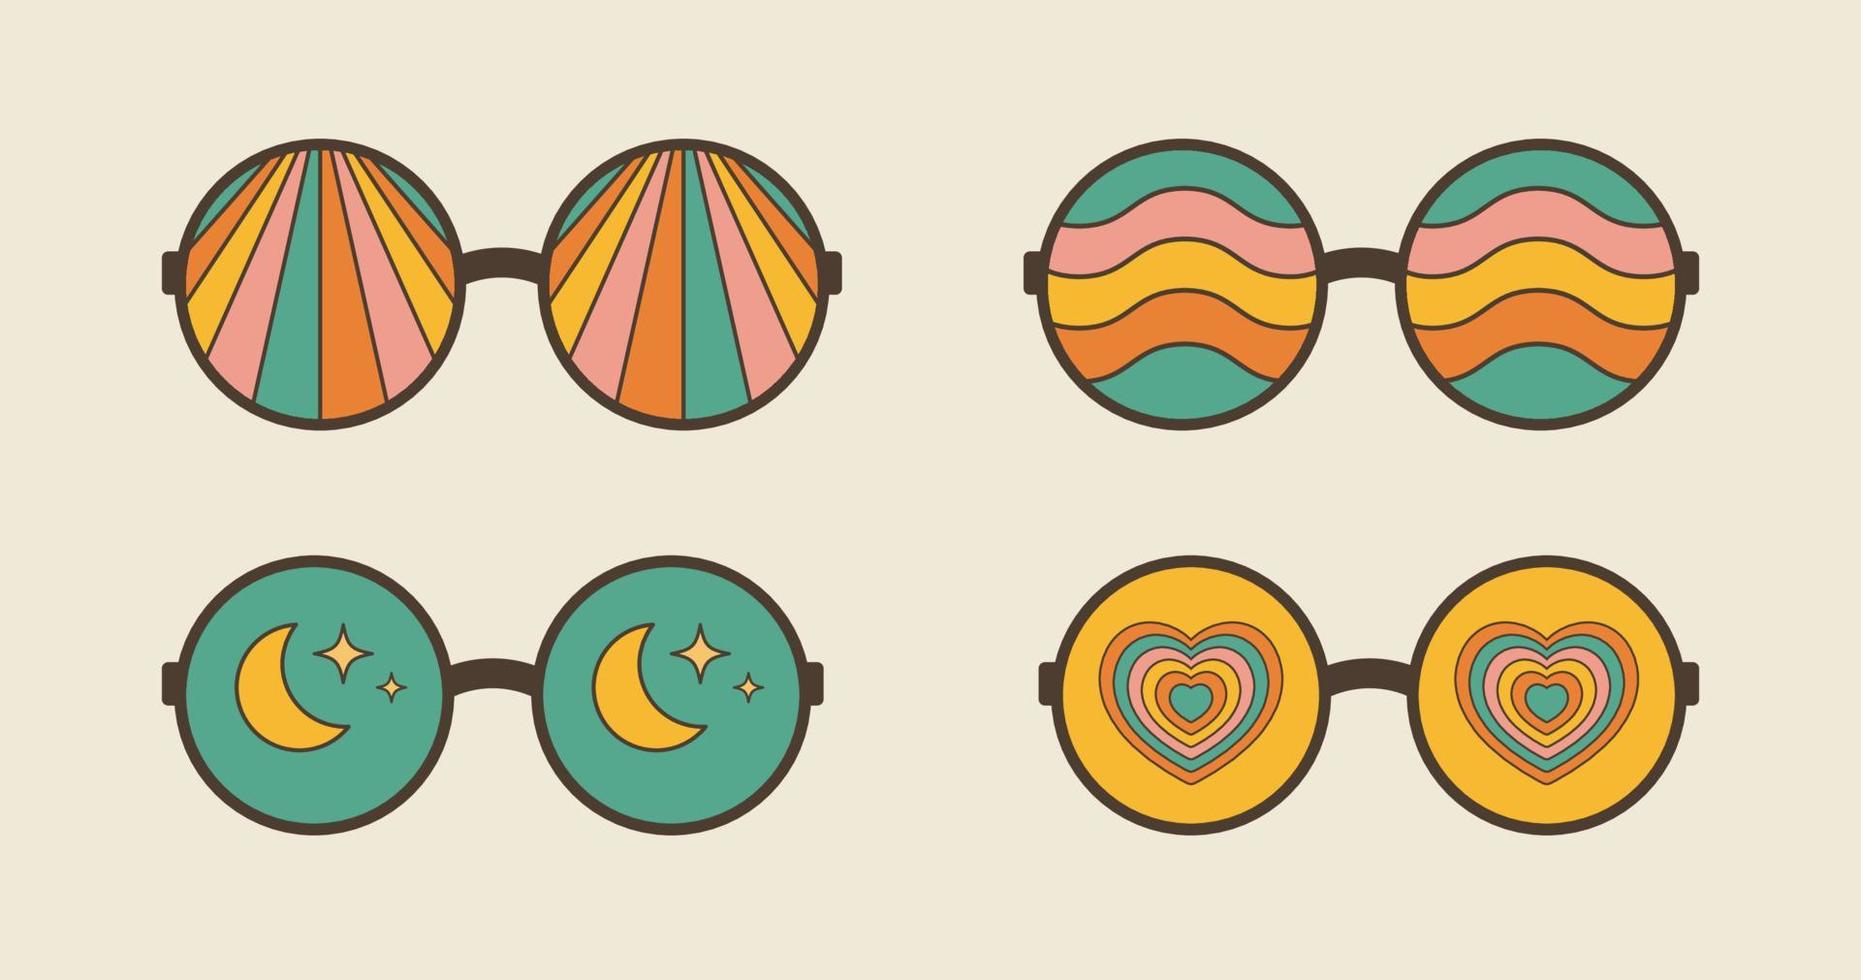 groovy trippy psychedelisch zonnebril set. retro jaren 70 grafisch elementen van bril met regenboog, harten, manen en golven. hippie boho stijl stickers vector